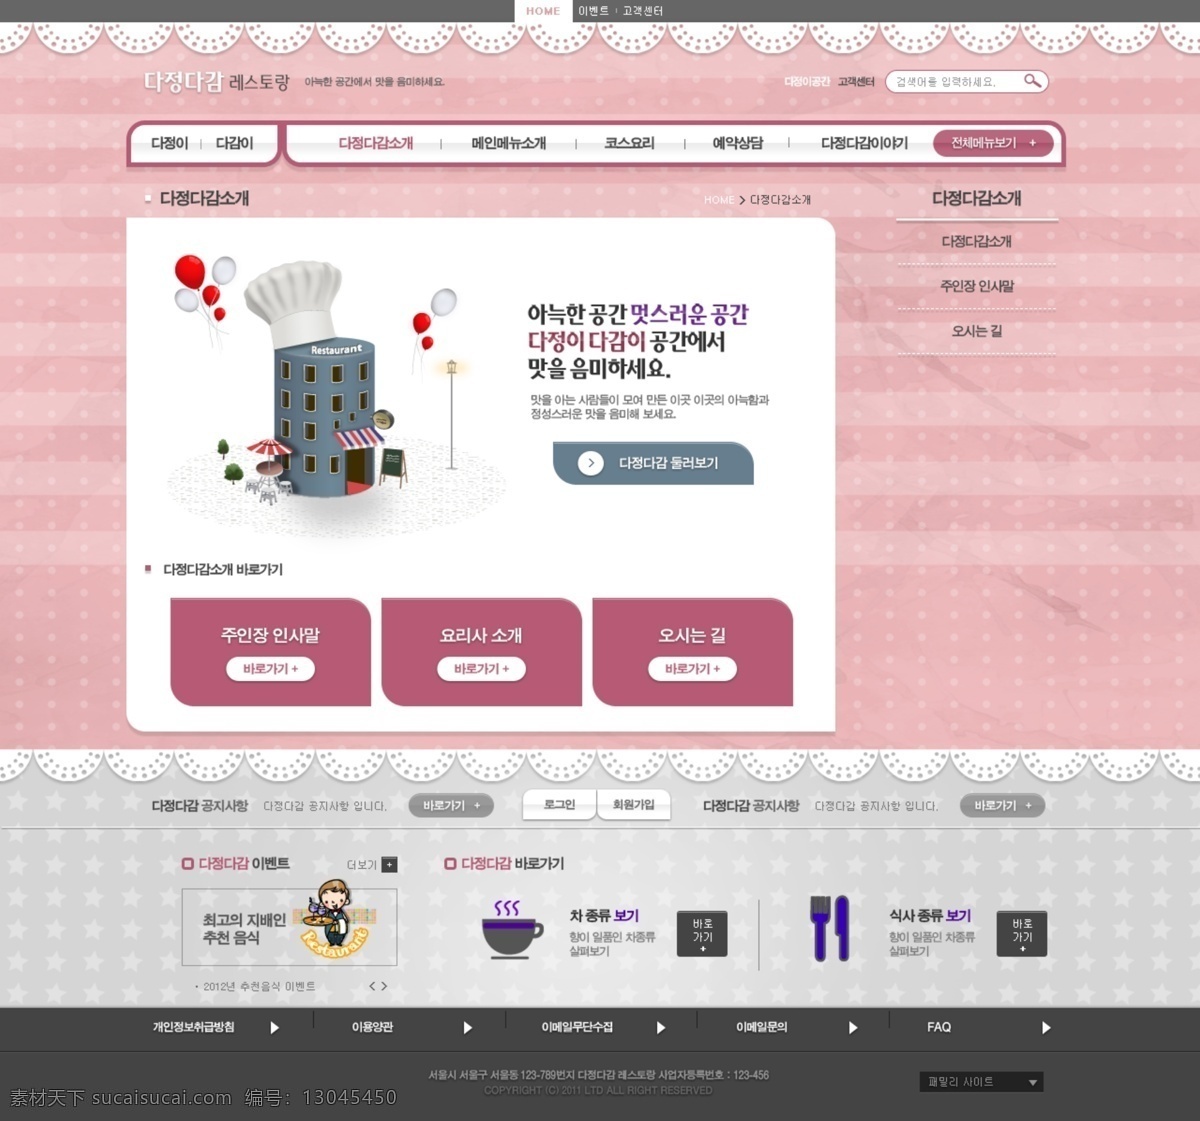 厨师帽 粉色网页 蕾丝花边 网页模板 网页设计 模板下载 网站设计 网页设计大师 影楼 韩文模板 源文件 网页素材